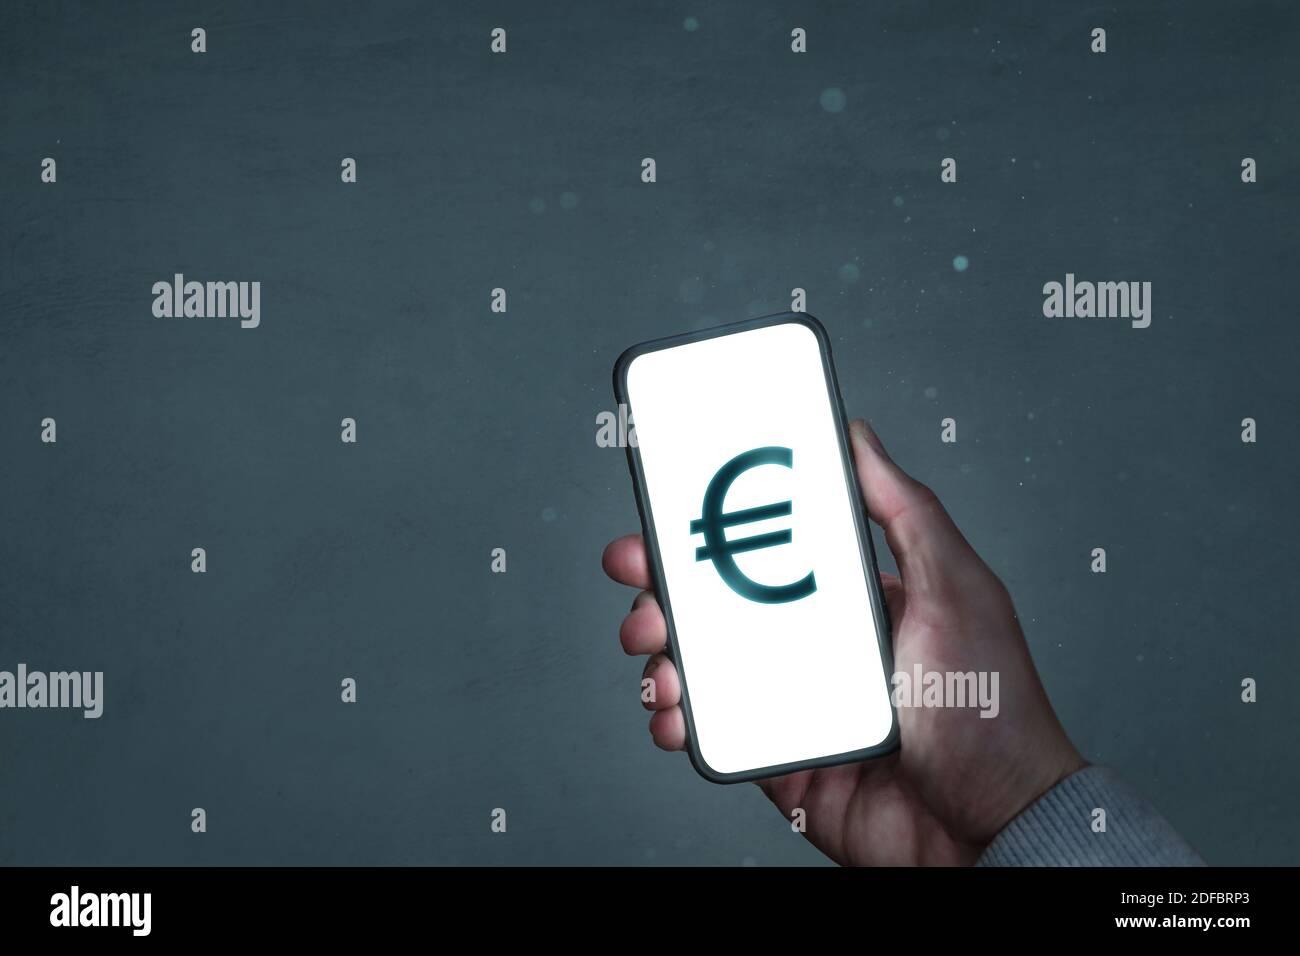 Pantalla del smartphone que muestra un símbolo de moneda del euro Foto de stock